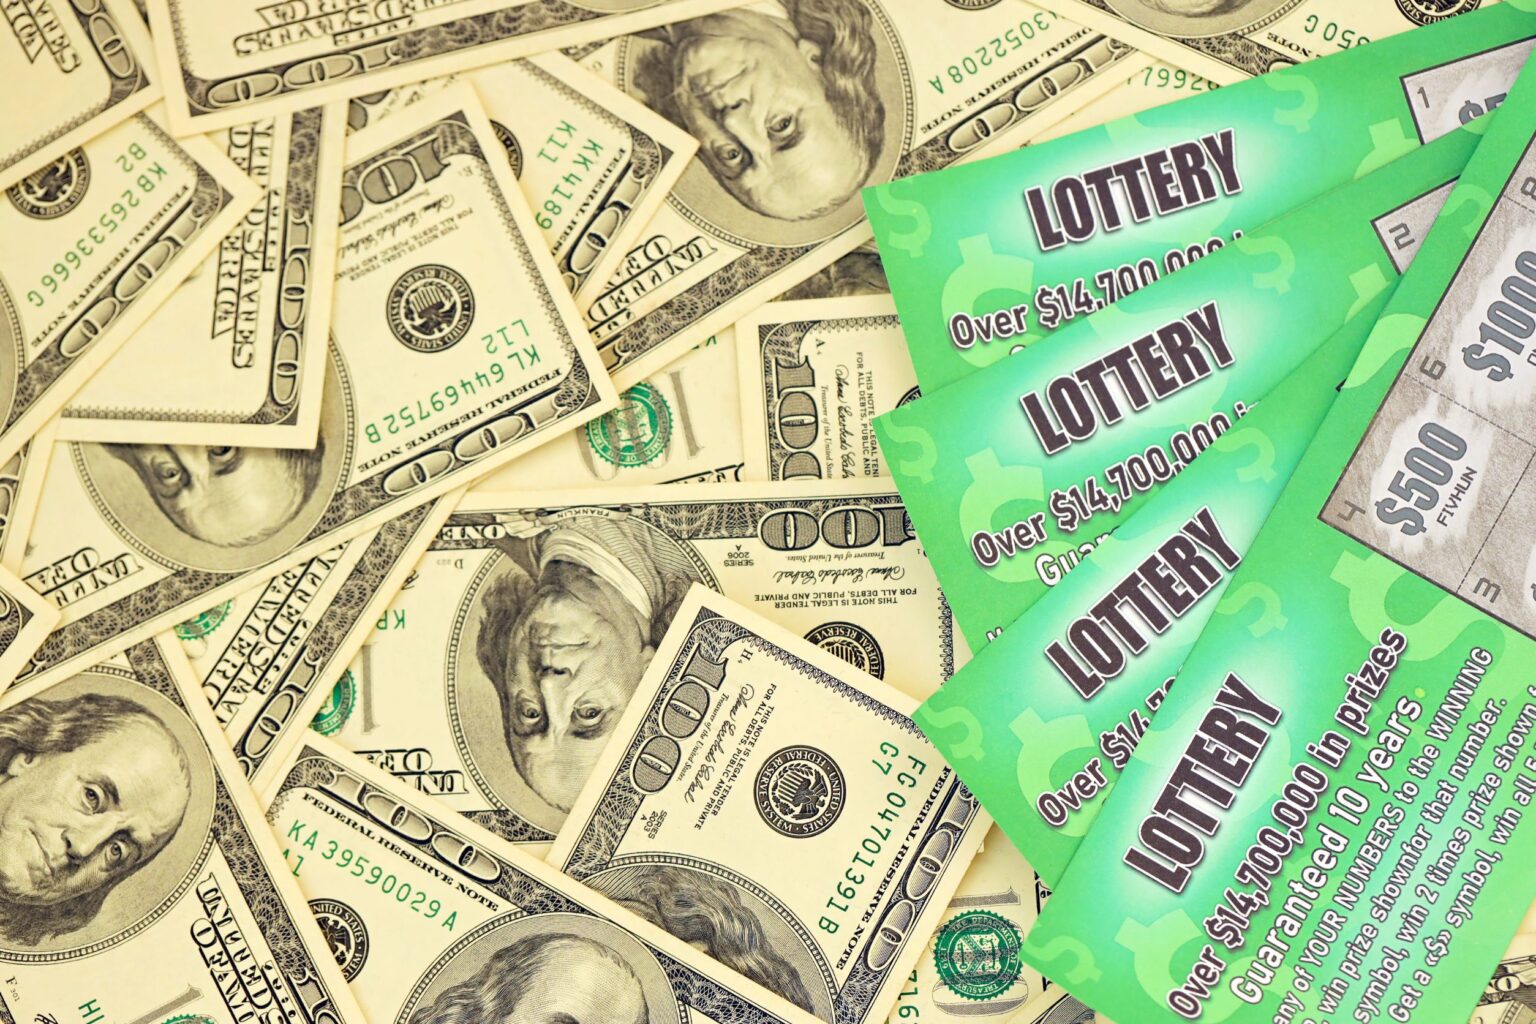 12 Reasons The Majority of Lottery Winners Go Broke